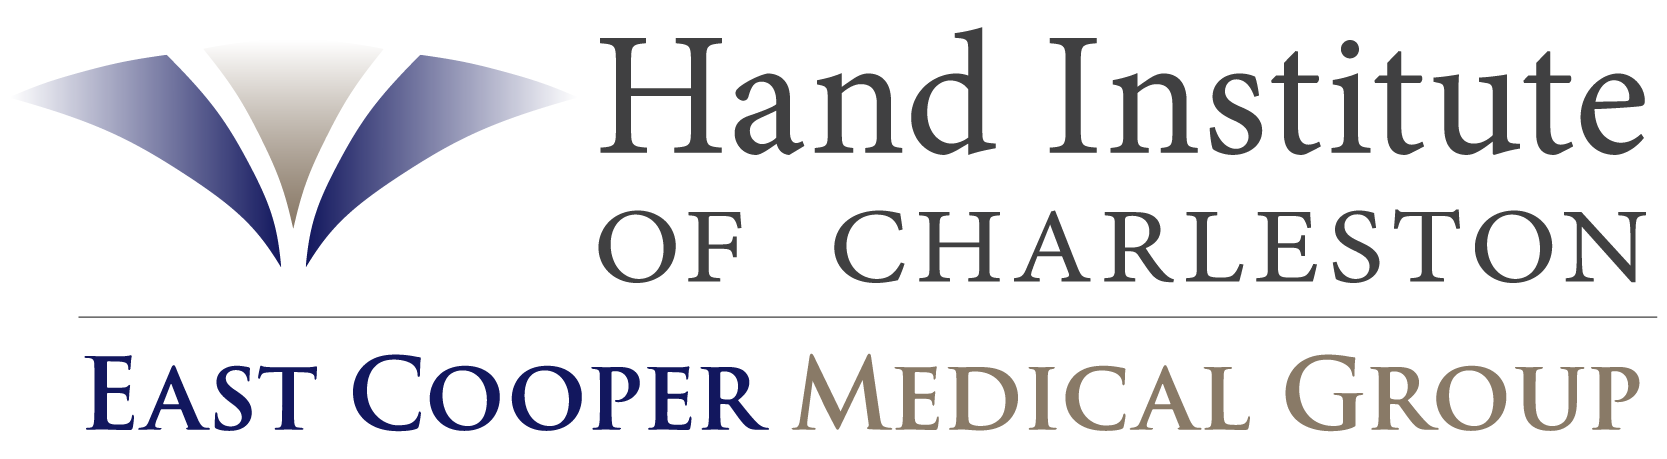 Hand Institute of Charleston Logo